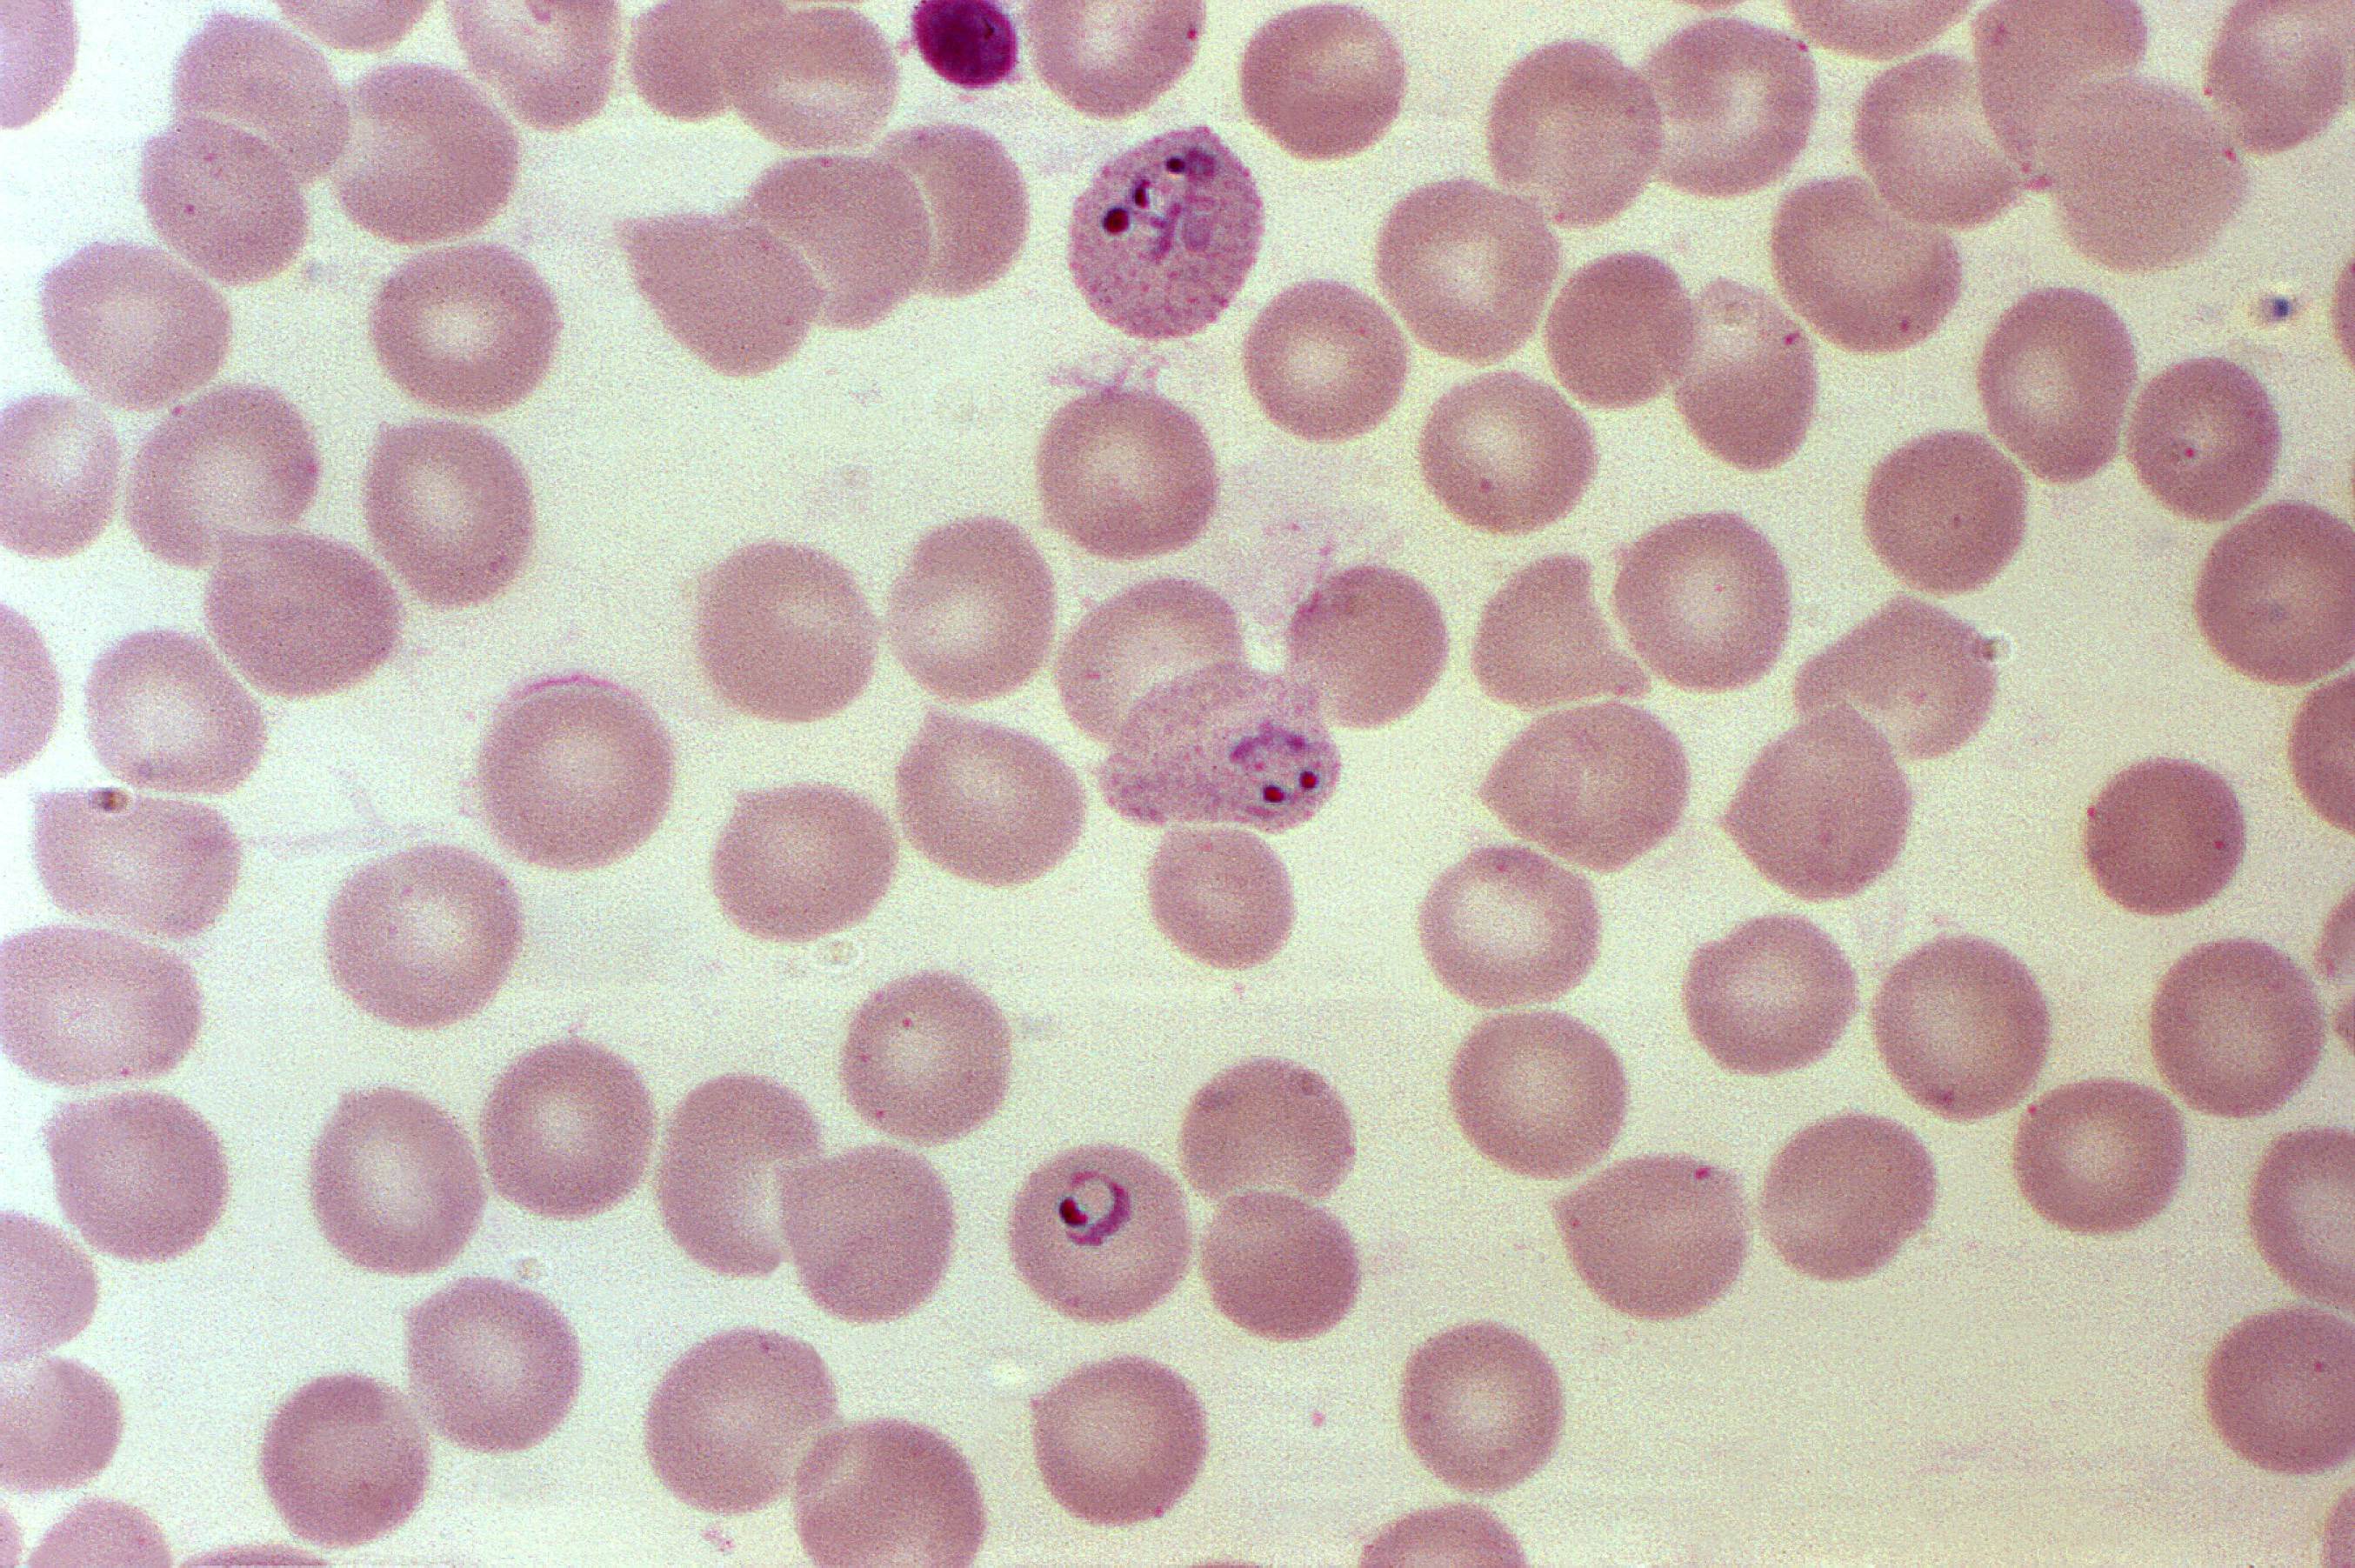 フリー写真画像 拡大すると 1000 の X 血液塗抹標本顕微鏡写真 赤血球 三日熱マラリア原虫 寄生虫を開発